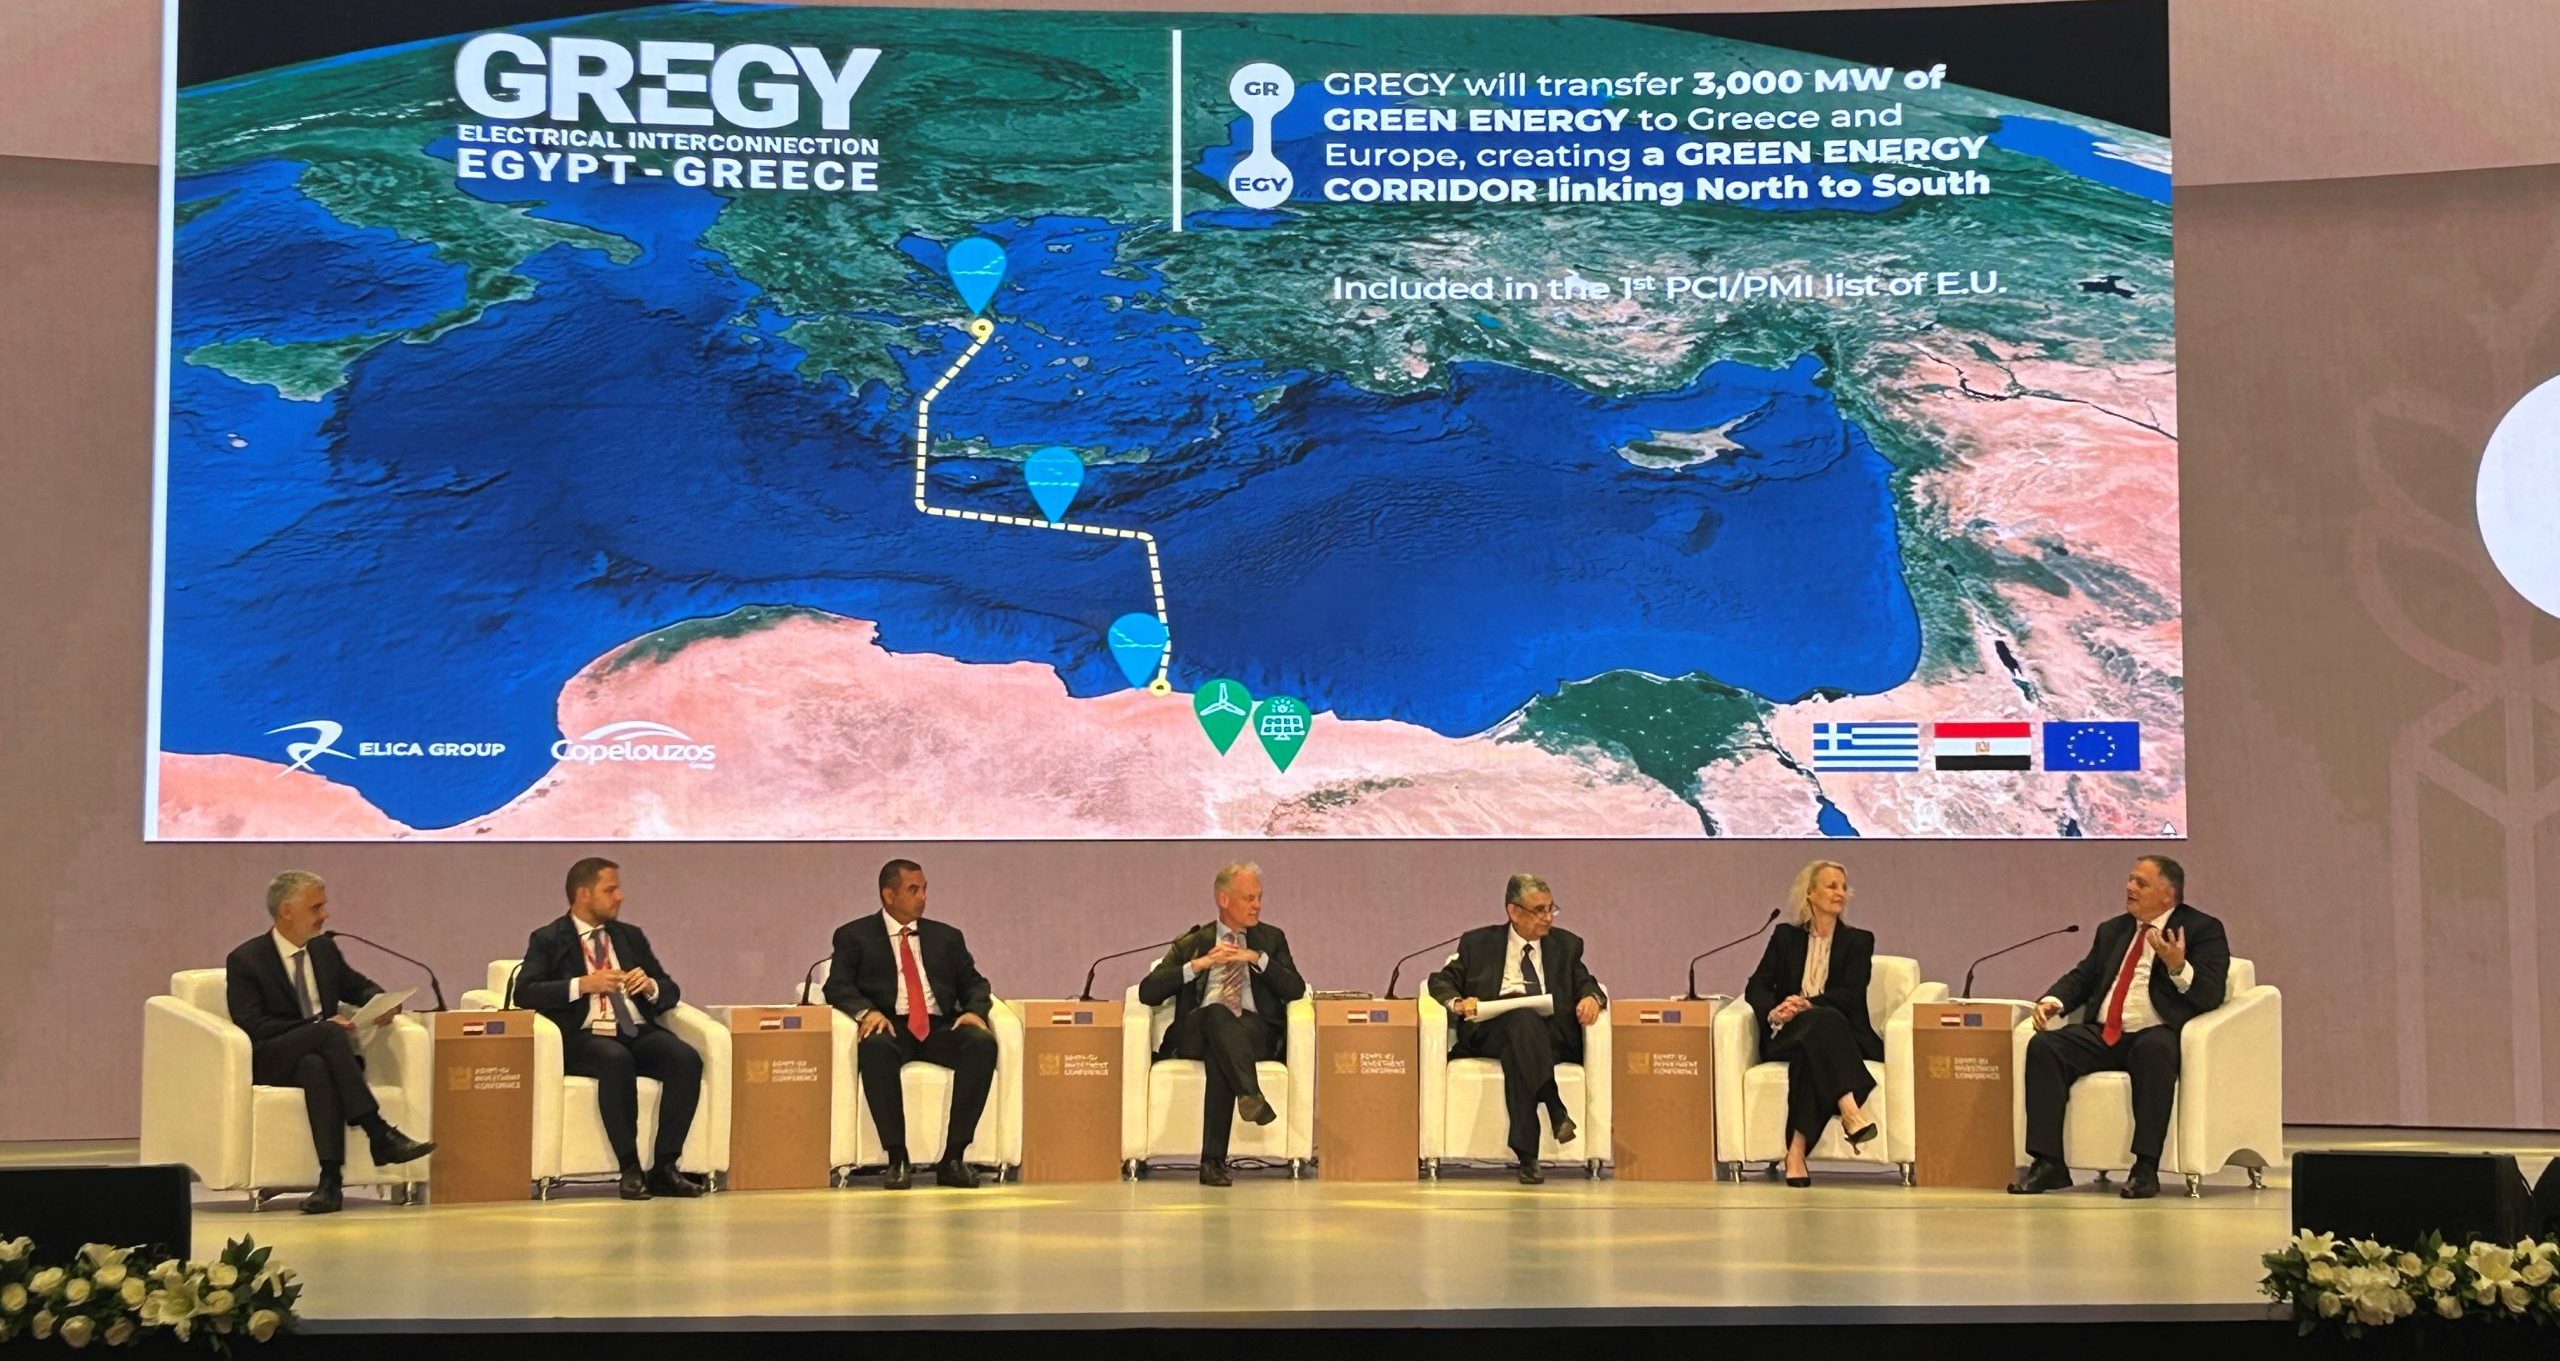 Σημαντική Παρουσία του Ομίλου Κοπελούζου και του «GREGY» στο Επενδυτικό Συνέδριο Αιγύπτου – Ευρωπαϊκής Ένωσης που πραγματοποιήθηκε στο Κάιρο